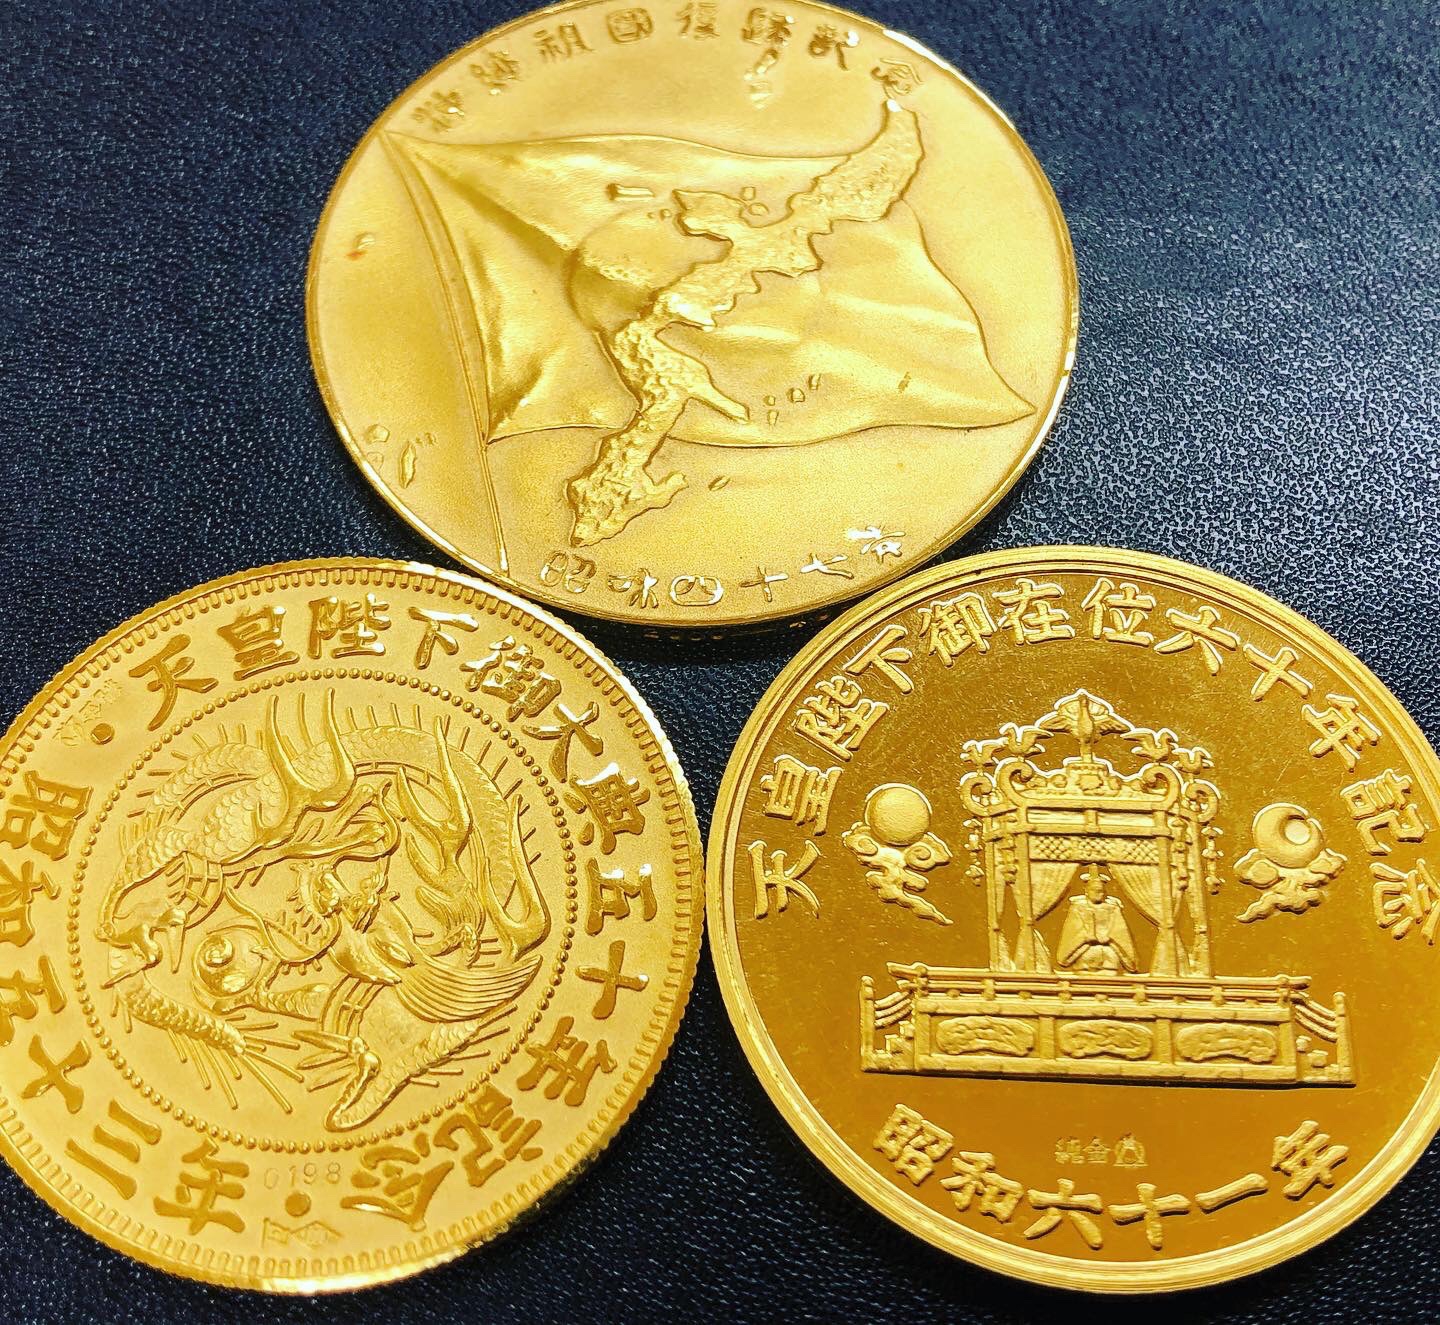 皇后陛下御誕生八十年記念 純銀 メダル (松本徽章製) - 旧貨幣/金貨 